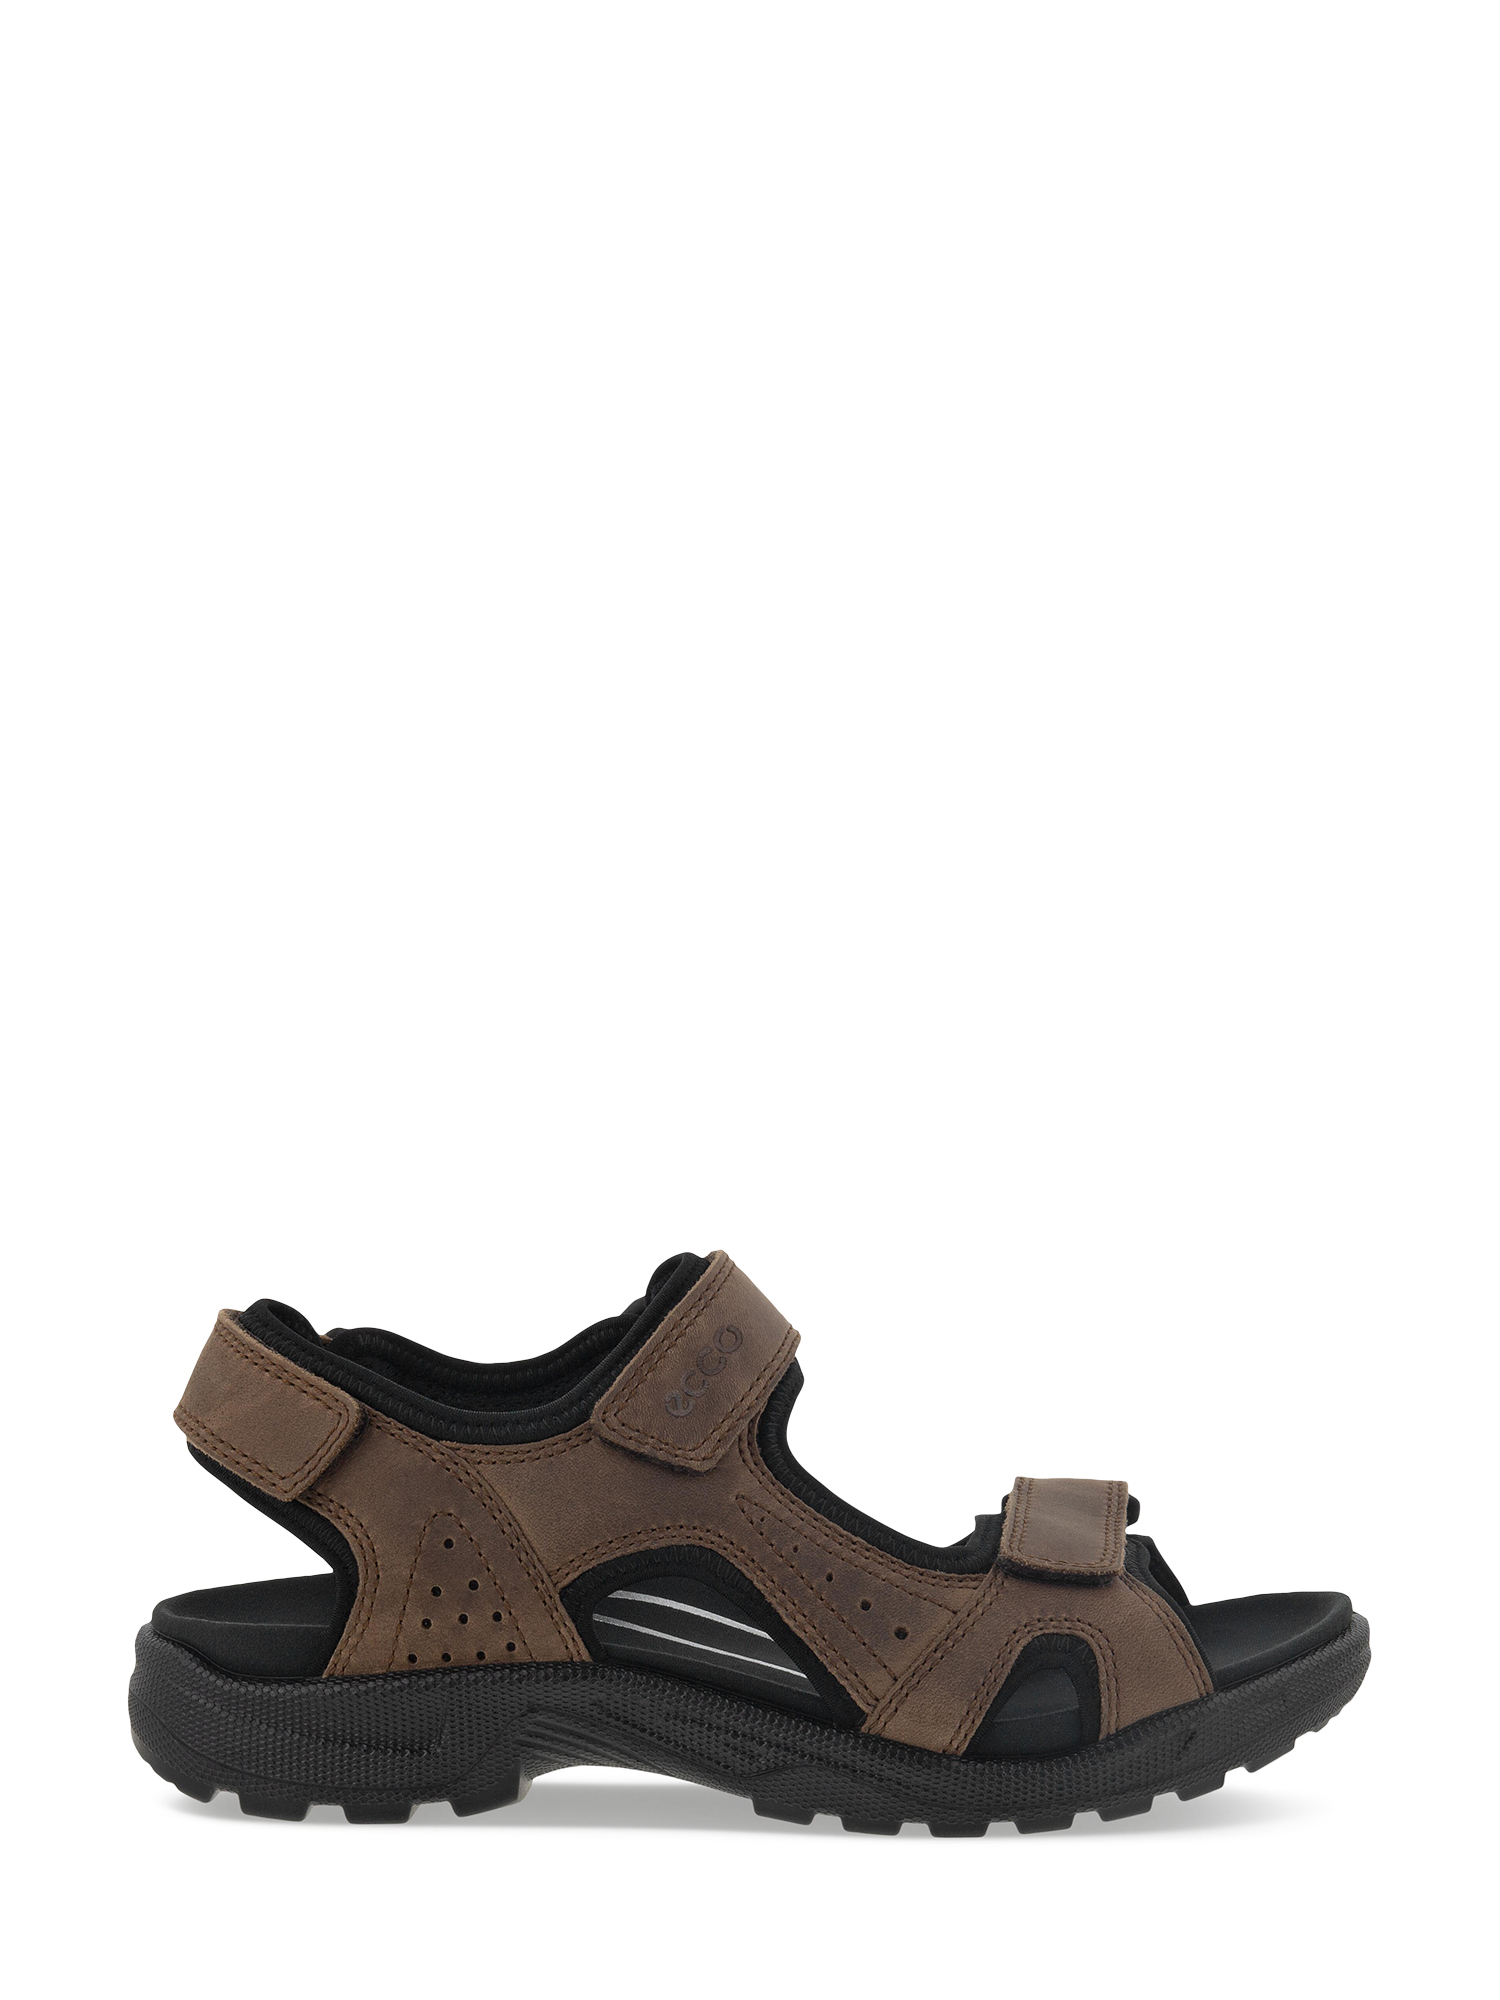 Bilde av Ecco Offroad Leather Sandal (41) - Brun